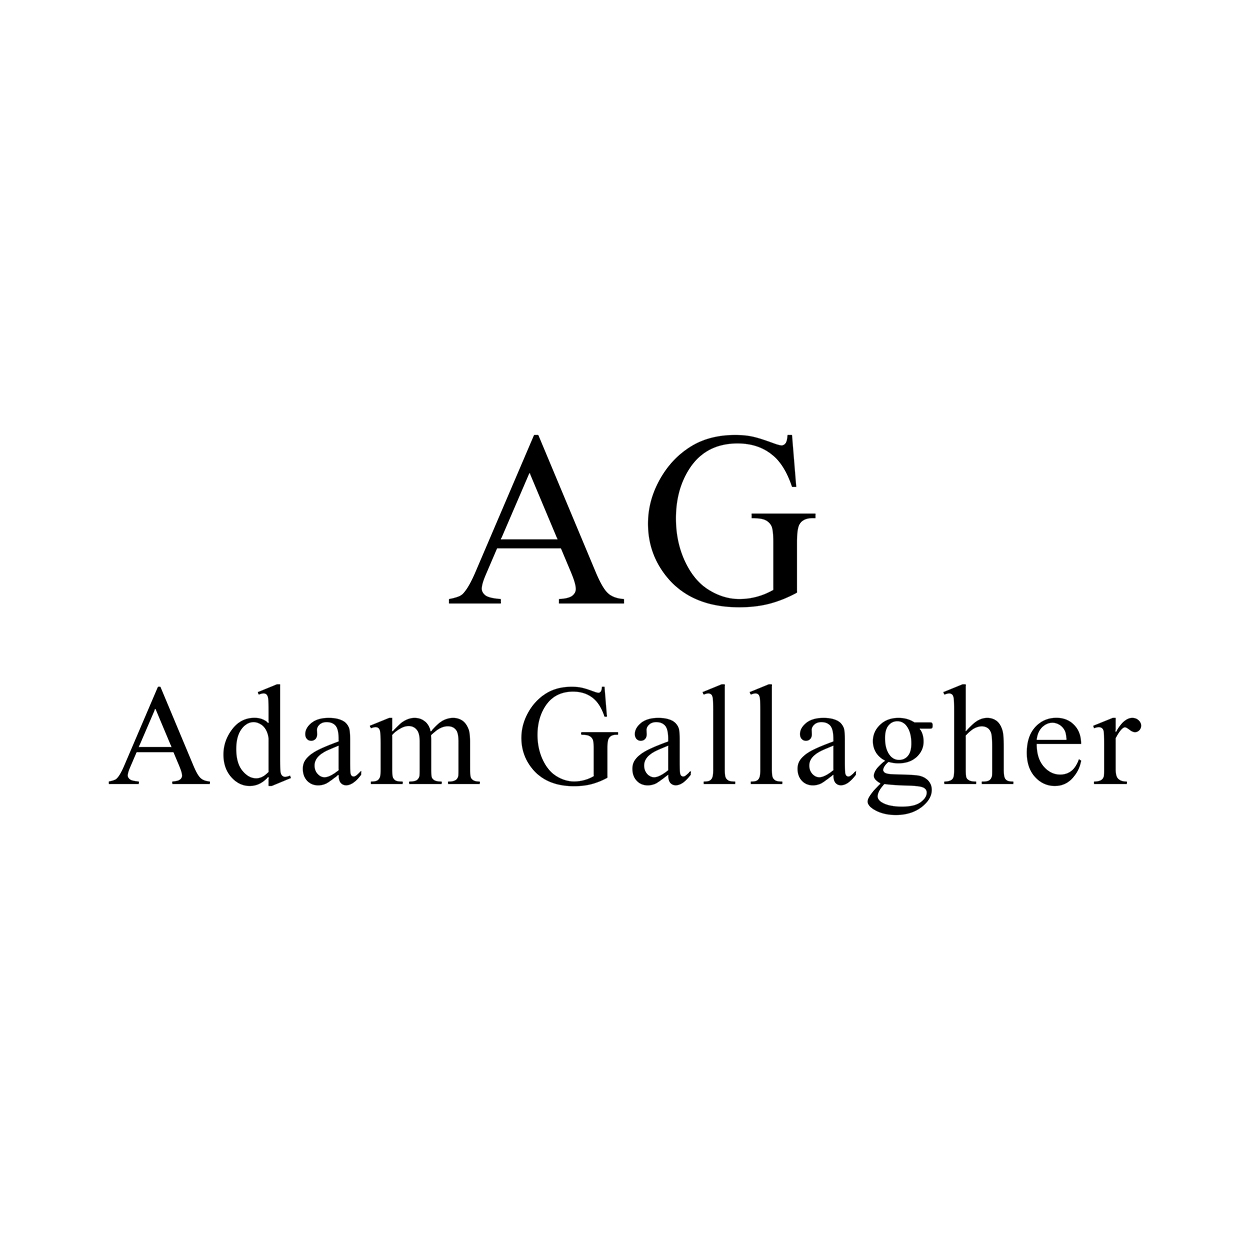 Adam Gallagher